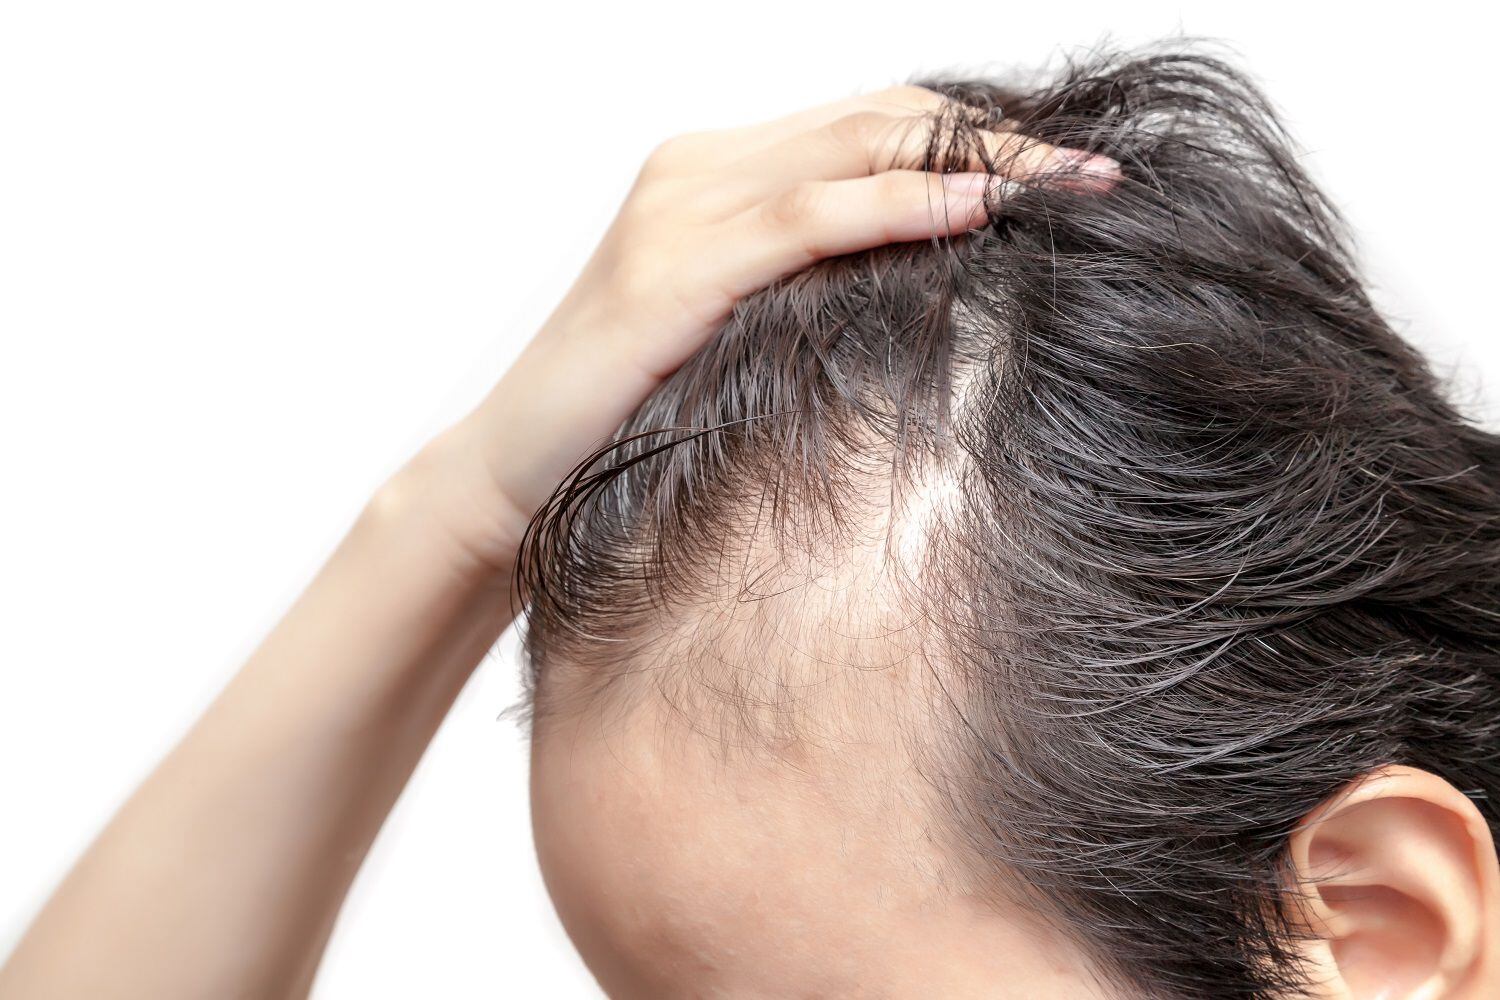 La pérdida de cabello suele ser más común en los hombres